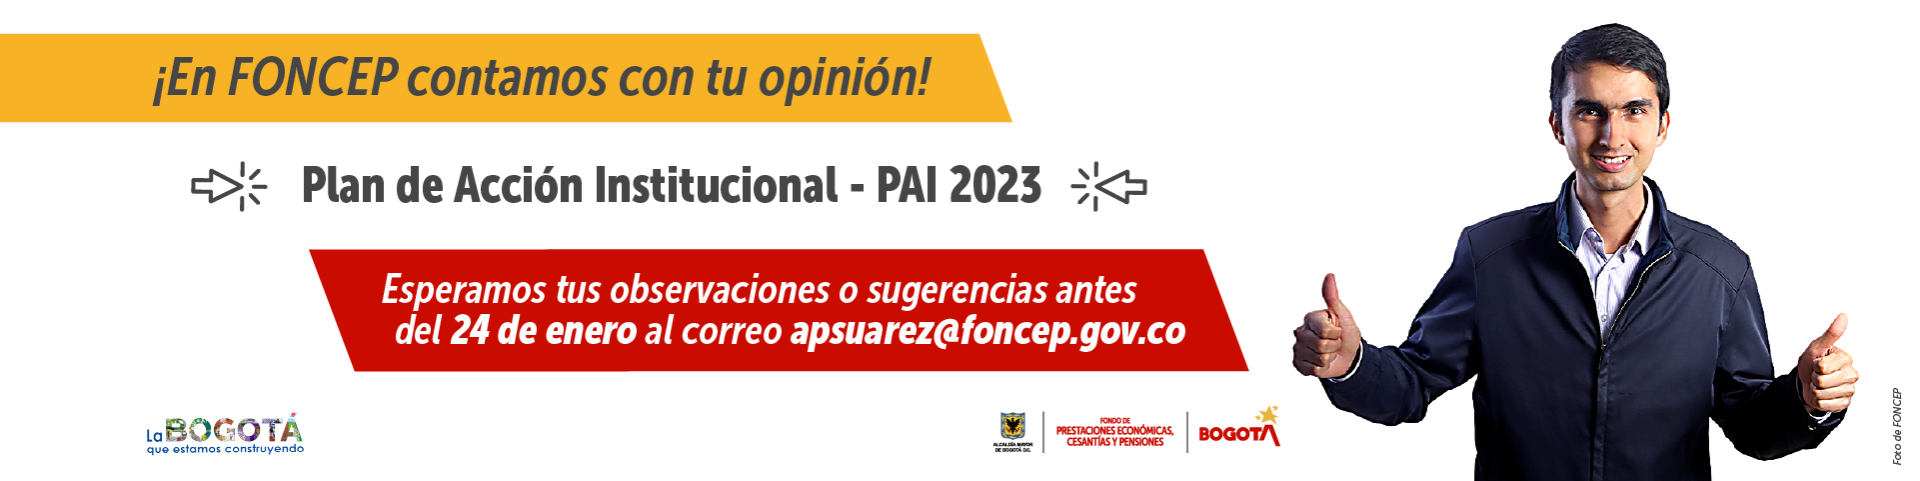 ¡En FONCEP contamos con tu opinión! - Plan de Acción Institucional - PAI 2023 - Esperamos tus observaciones o sugerencias antes del 24 de enero al correo apsuarez@foncep.gov.co